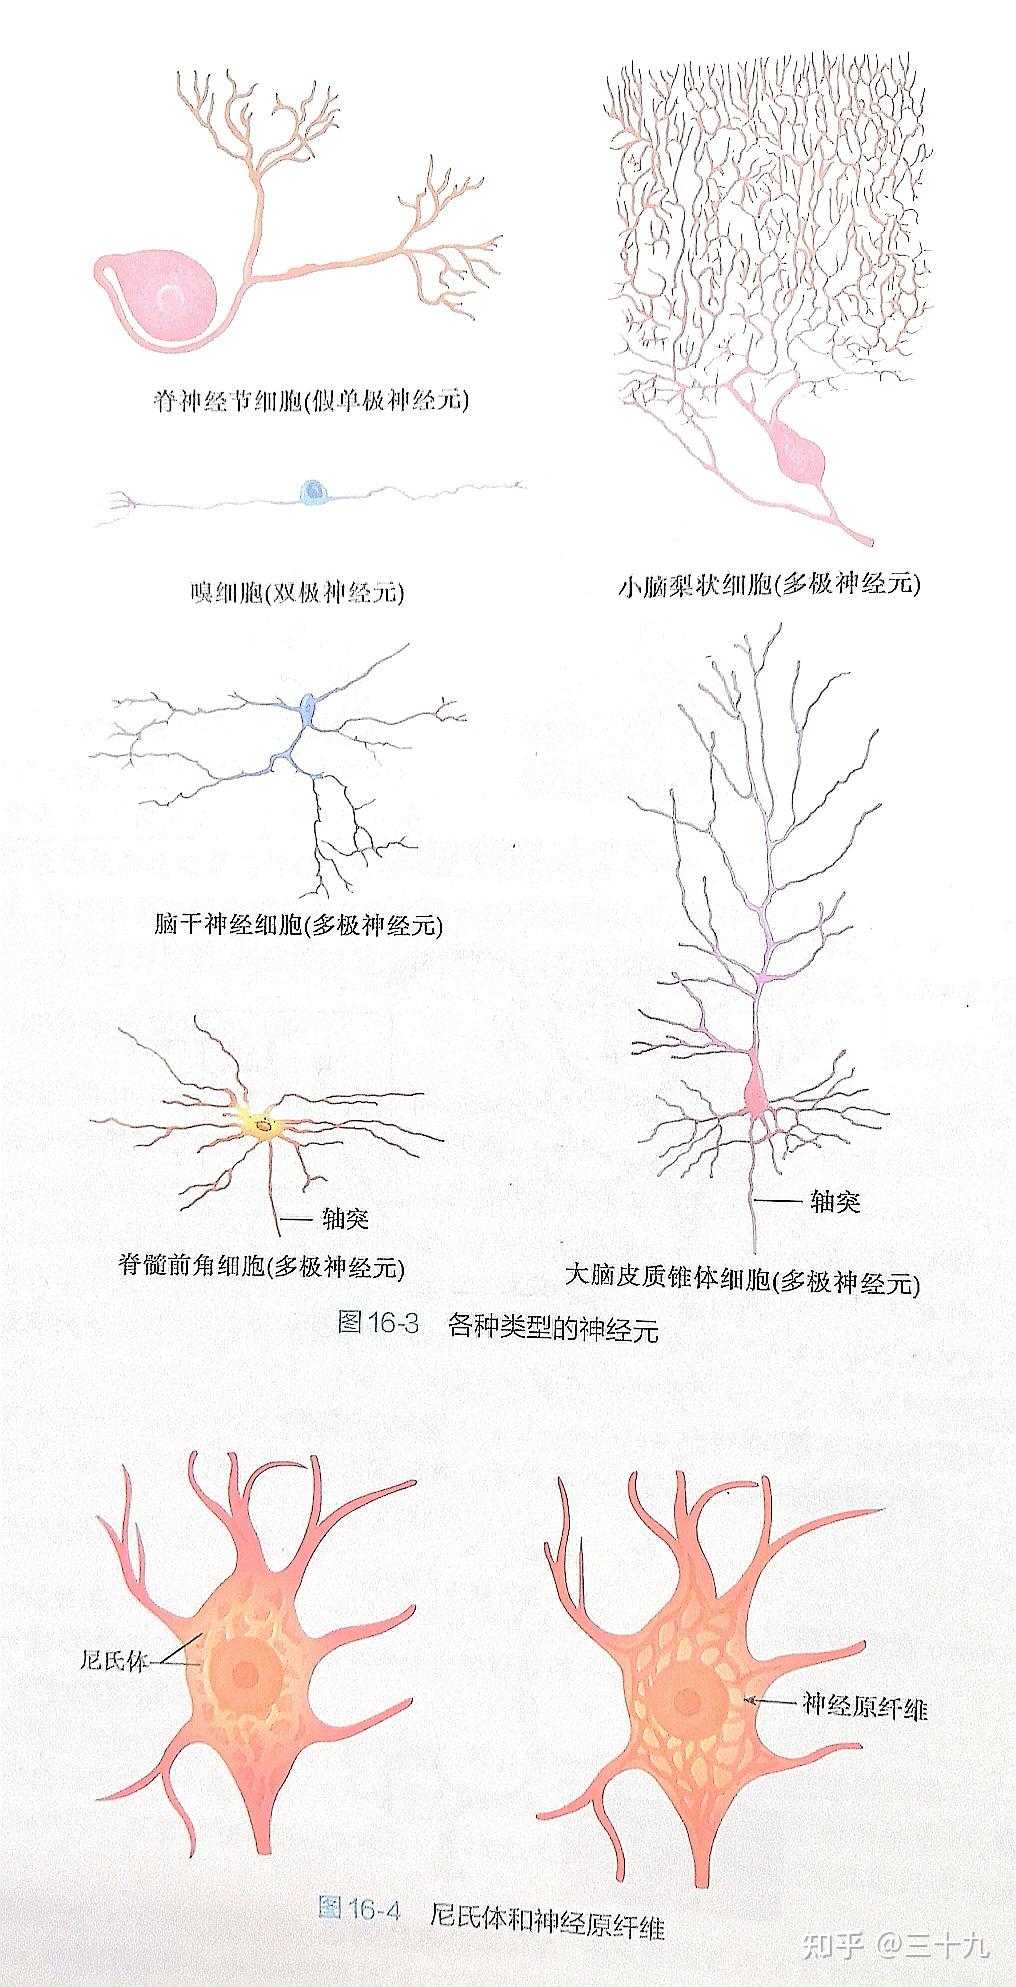 一,神经元和神经胶质细胞